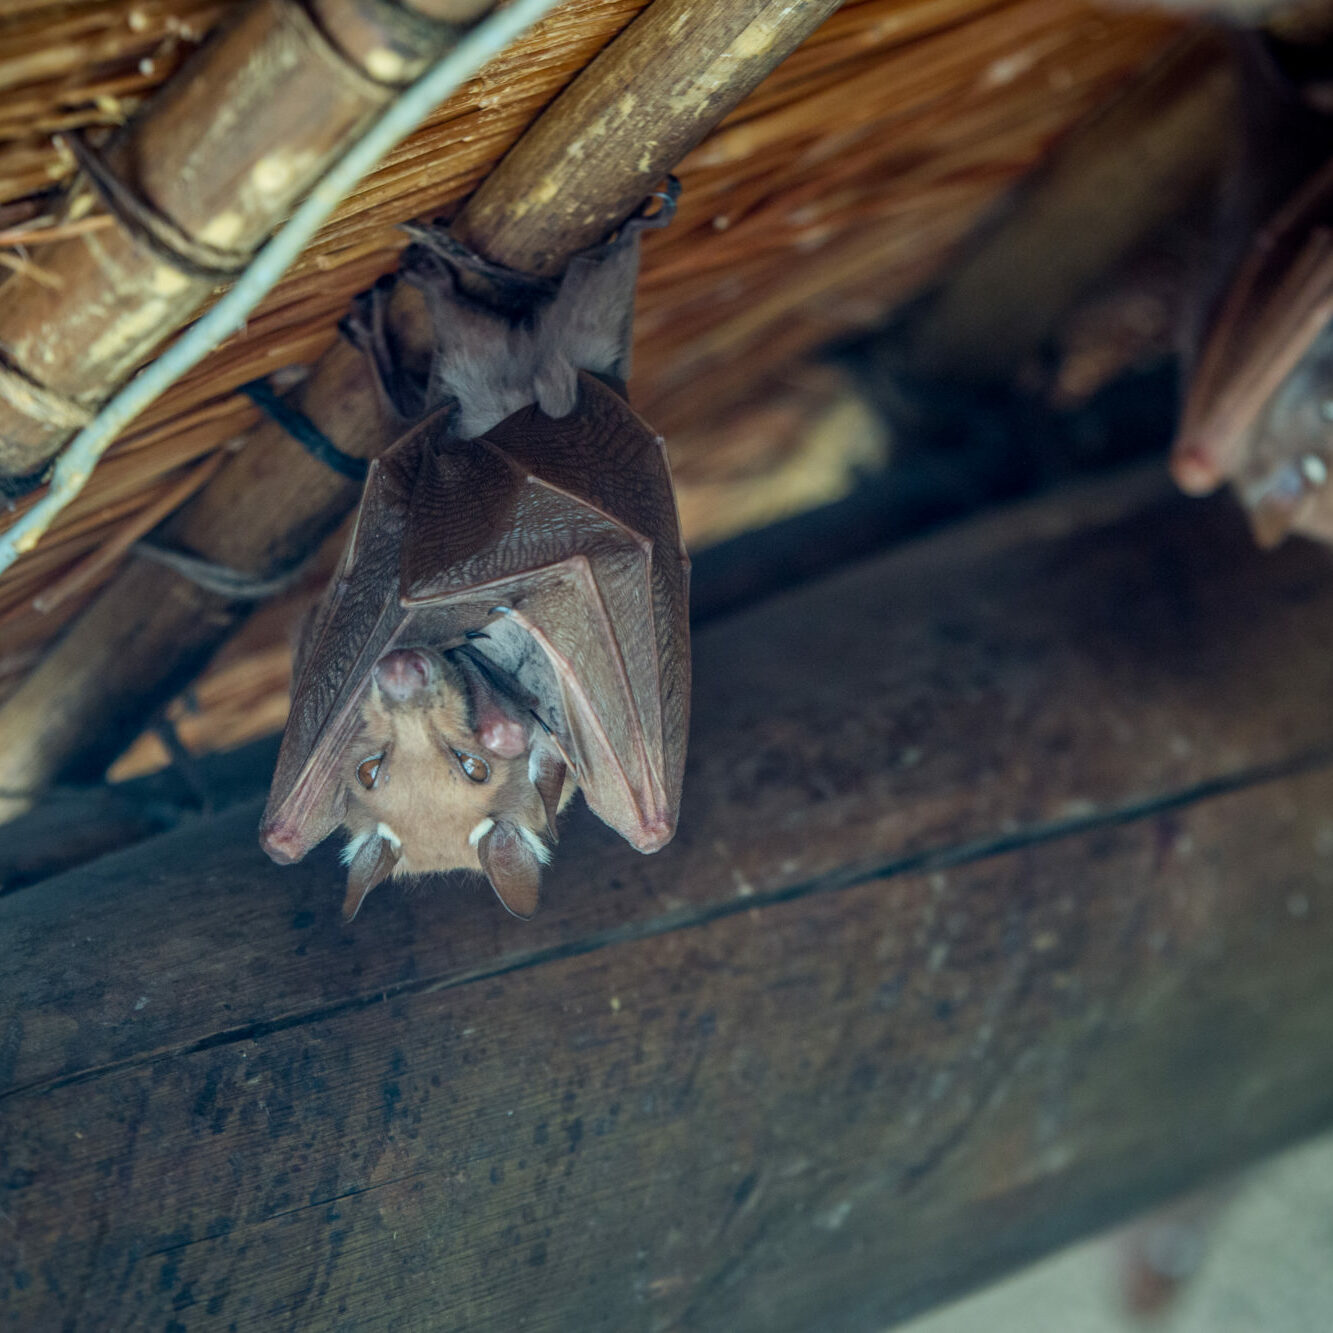 Epaulet Bat Hanging Upside Down.